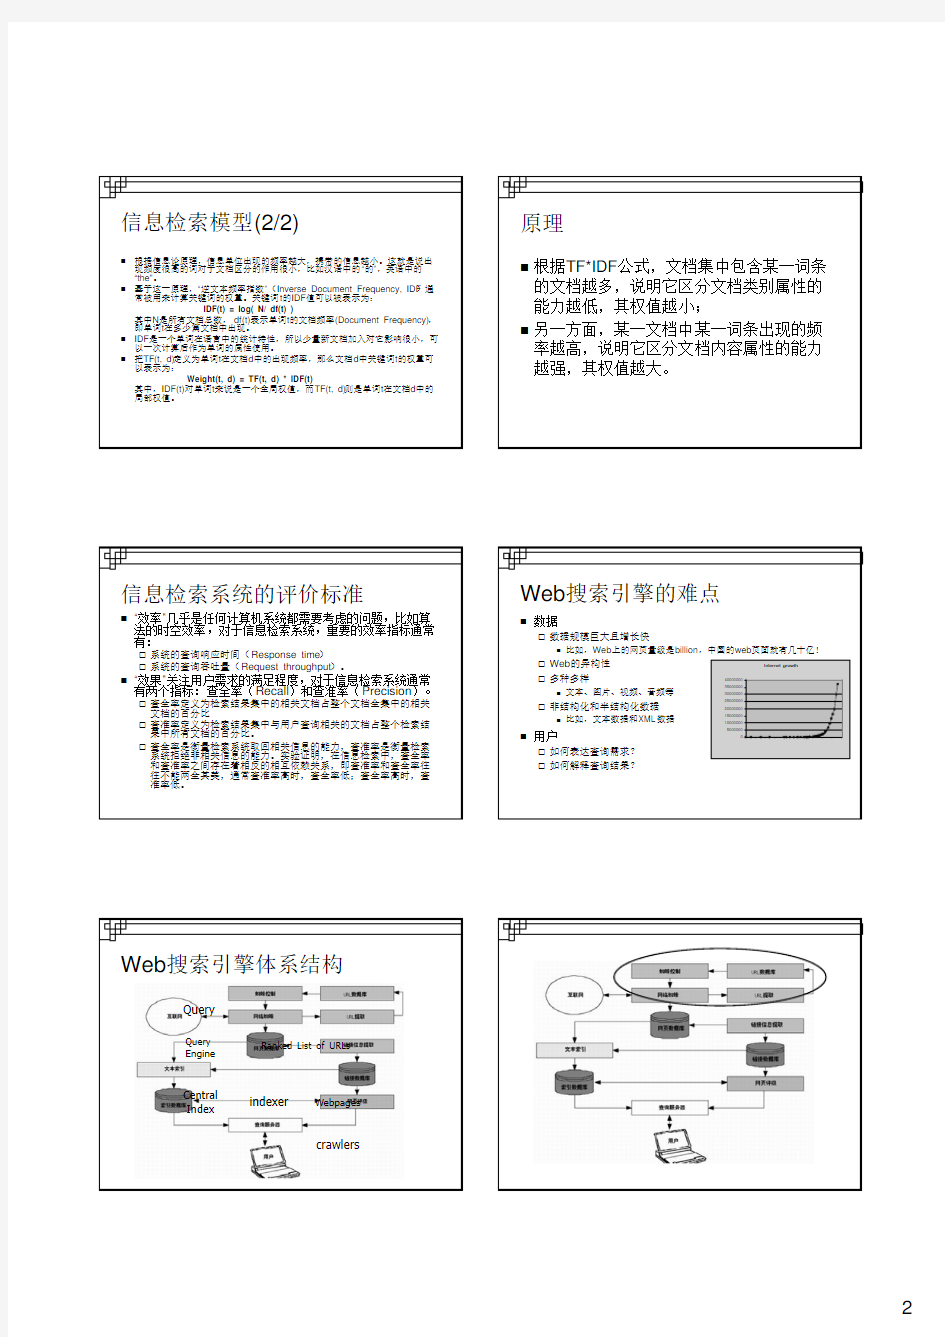 下载pdf讲义搜索引擎技术介绍